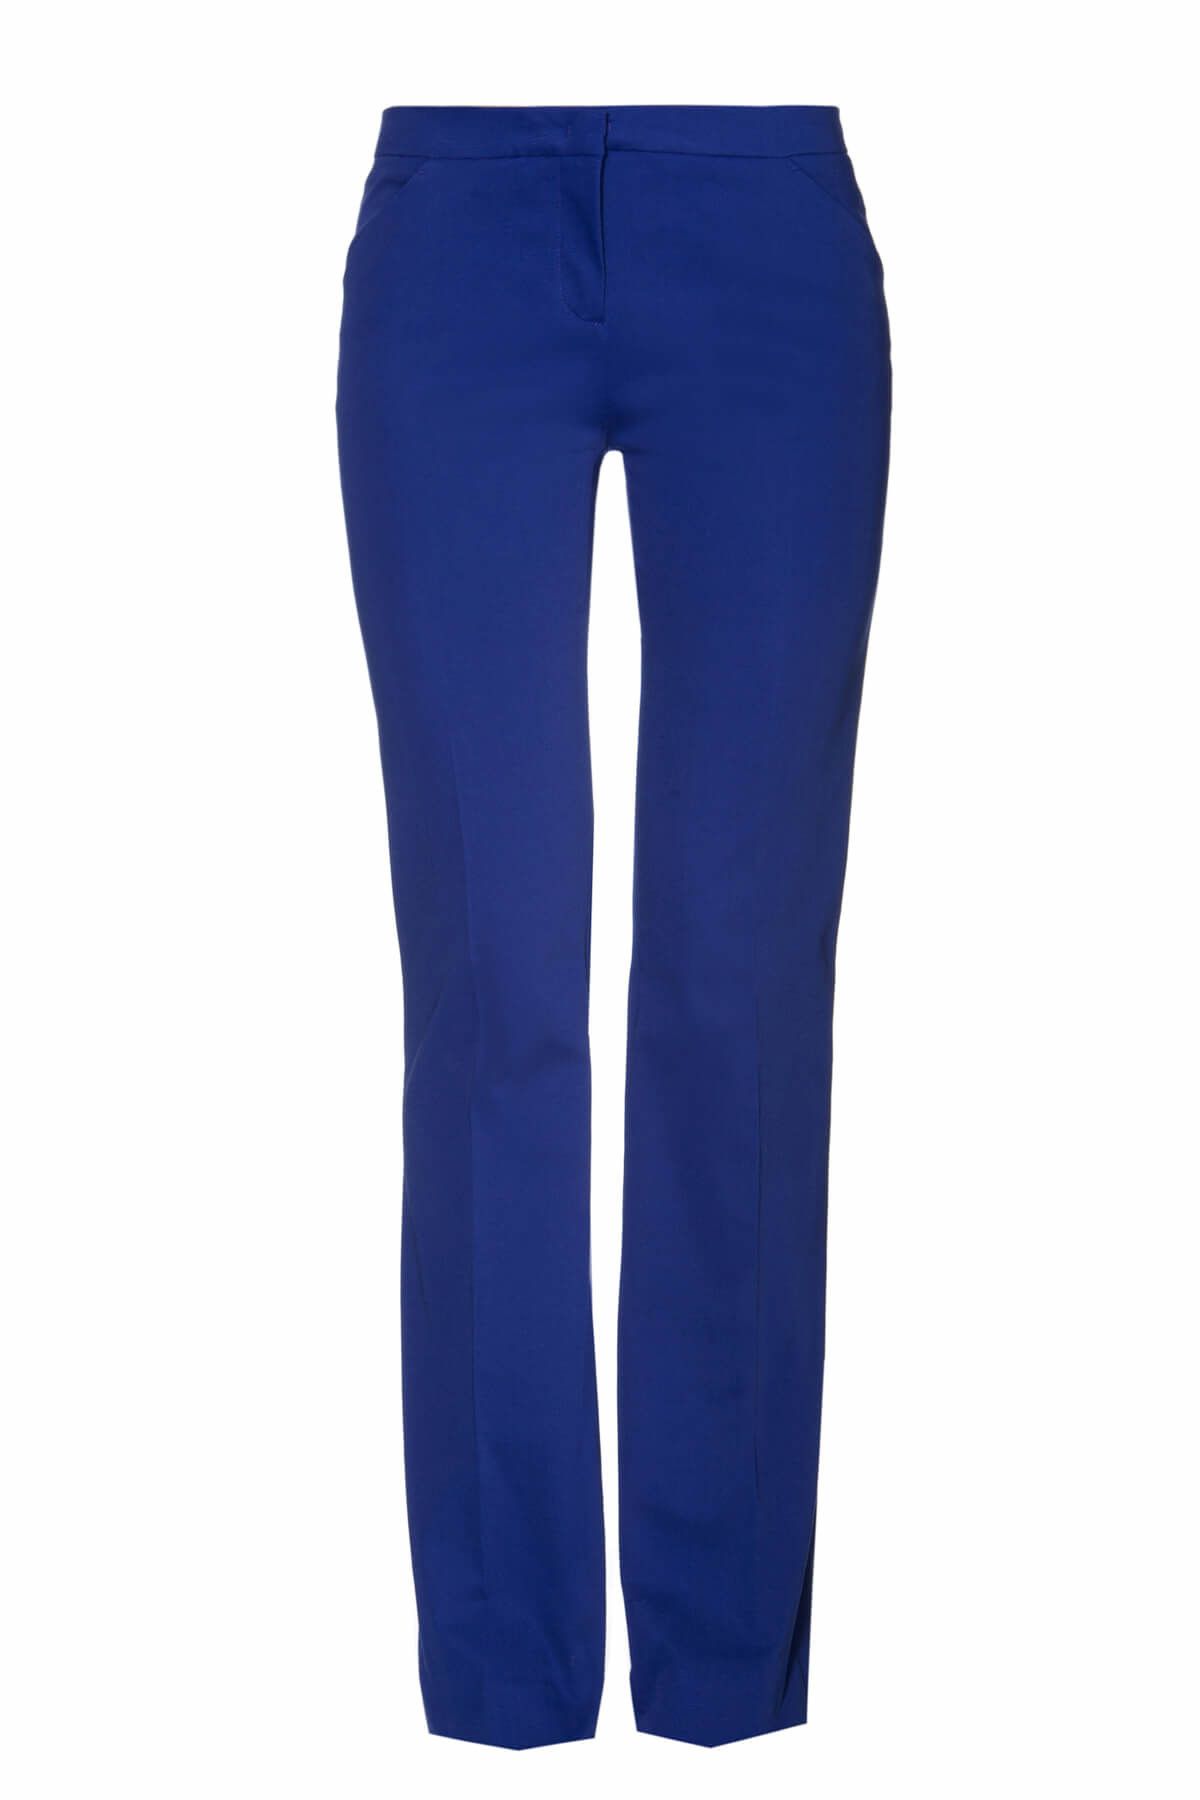 PİNKO Kadın Mavi Pantolon 1B10UM/5313/F99